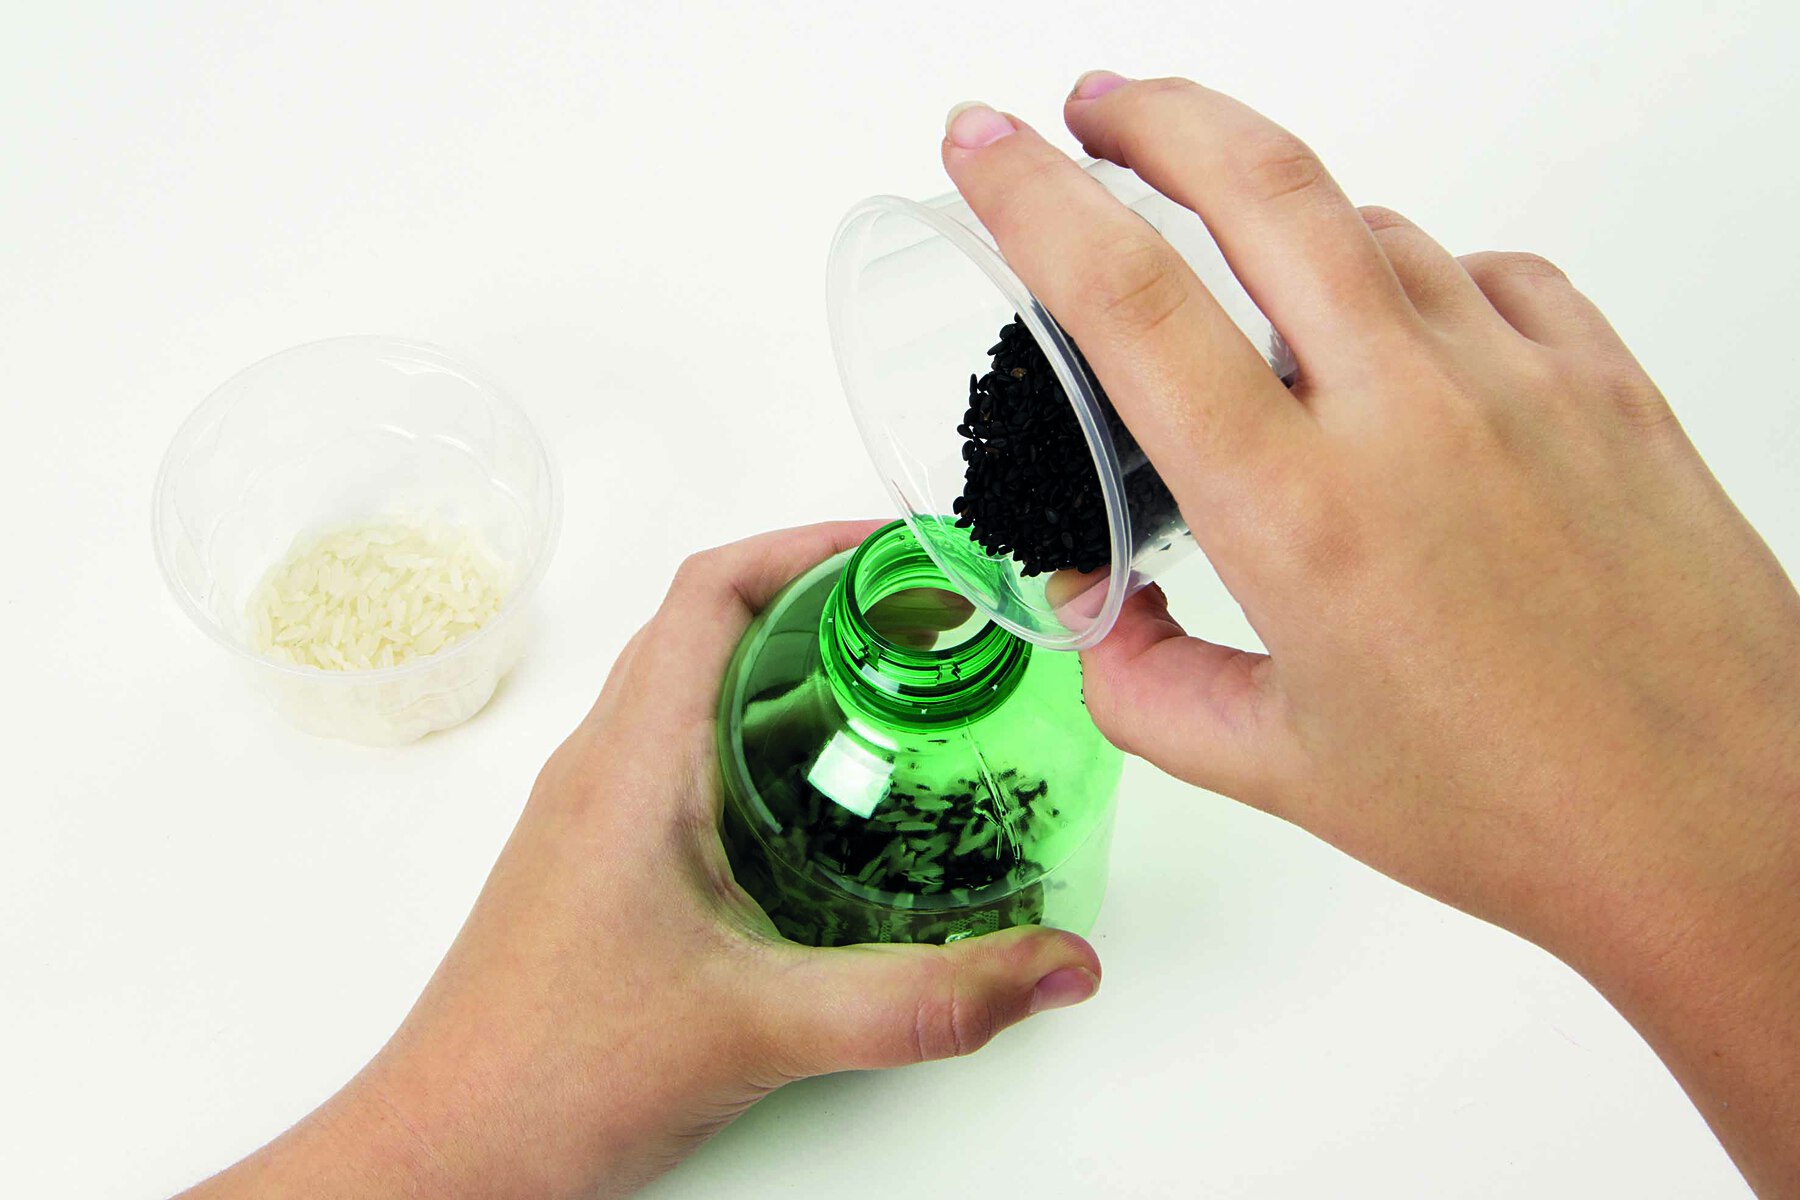 Fotografia. Destaque de mãos despejando sementes pretas dentro de uma garrafa PET pequena.